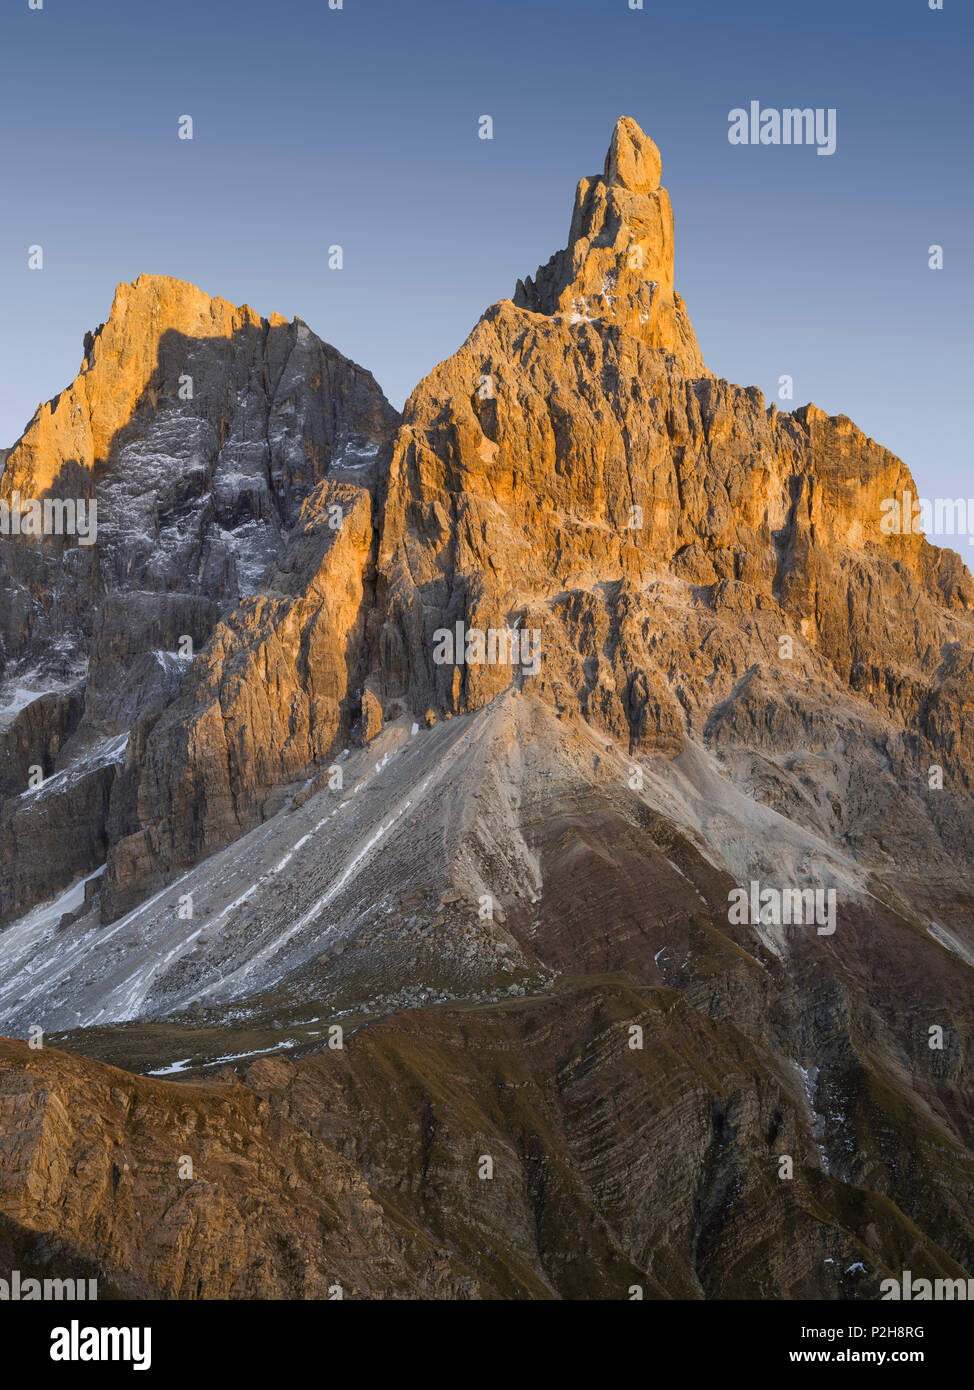 Cima della Vezzana 3192m, il Cimon della Pala 3184m, Passo Rolle, Trentino, Alto Adige, Dolomiti, Italia Foto Stock